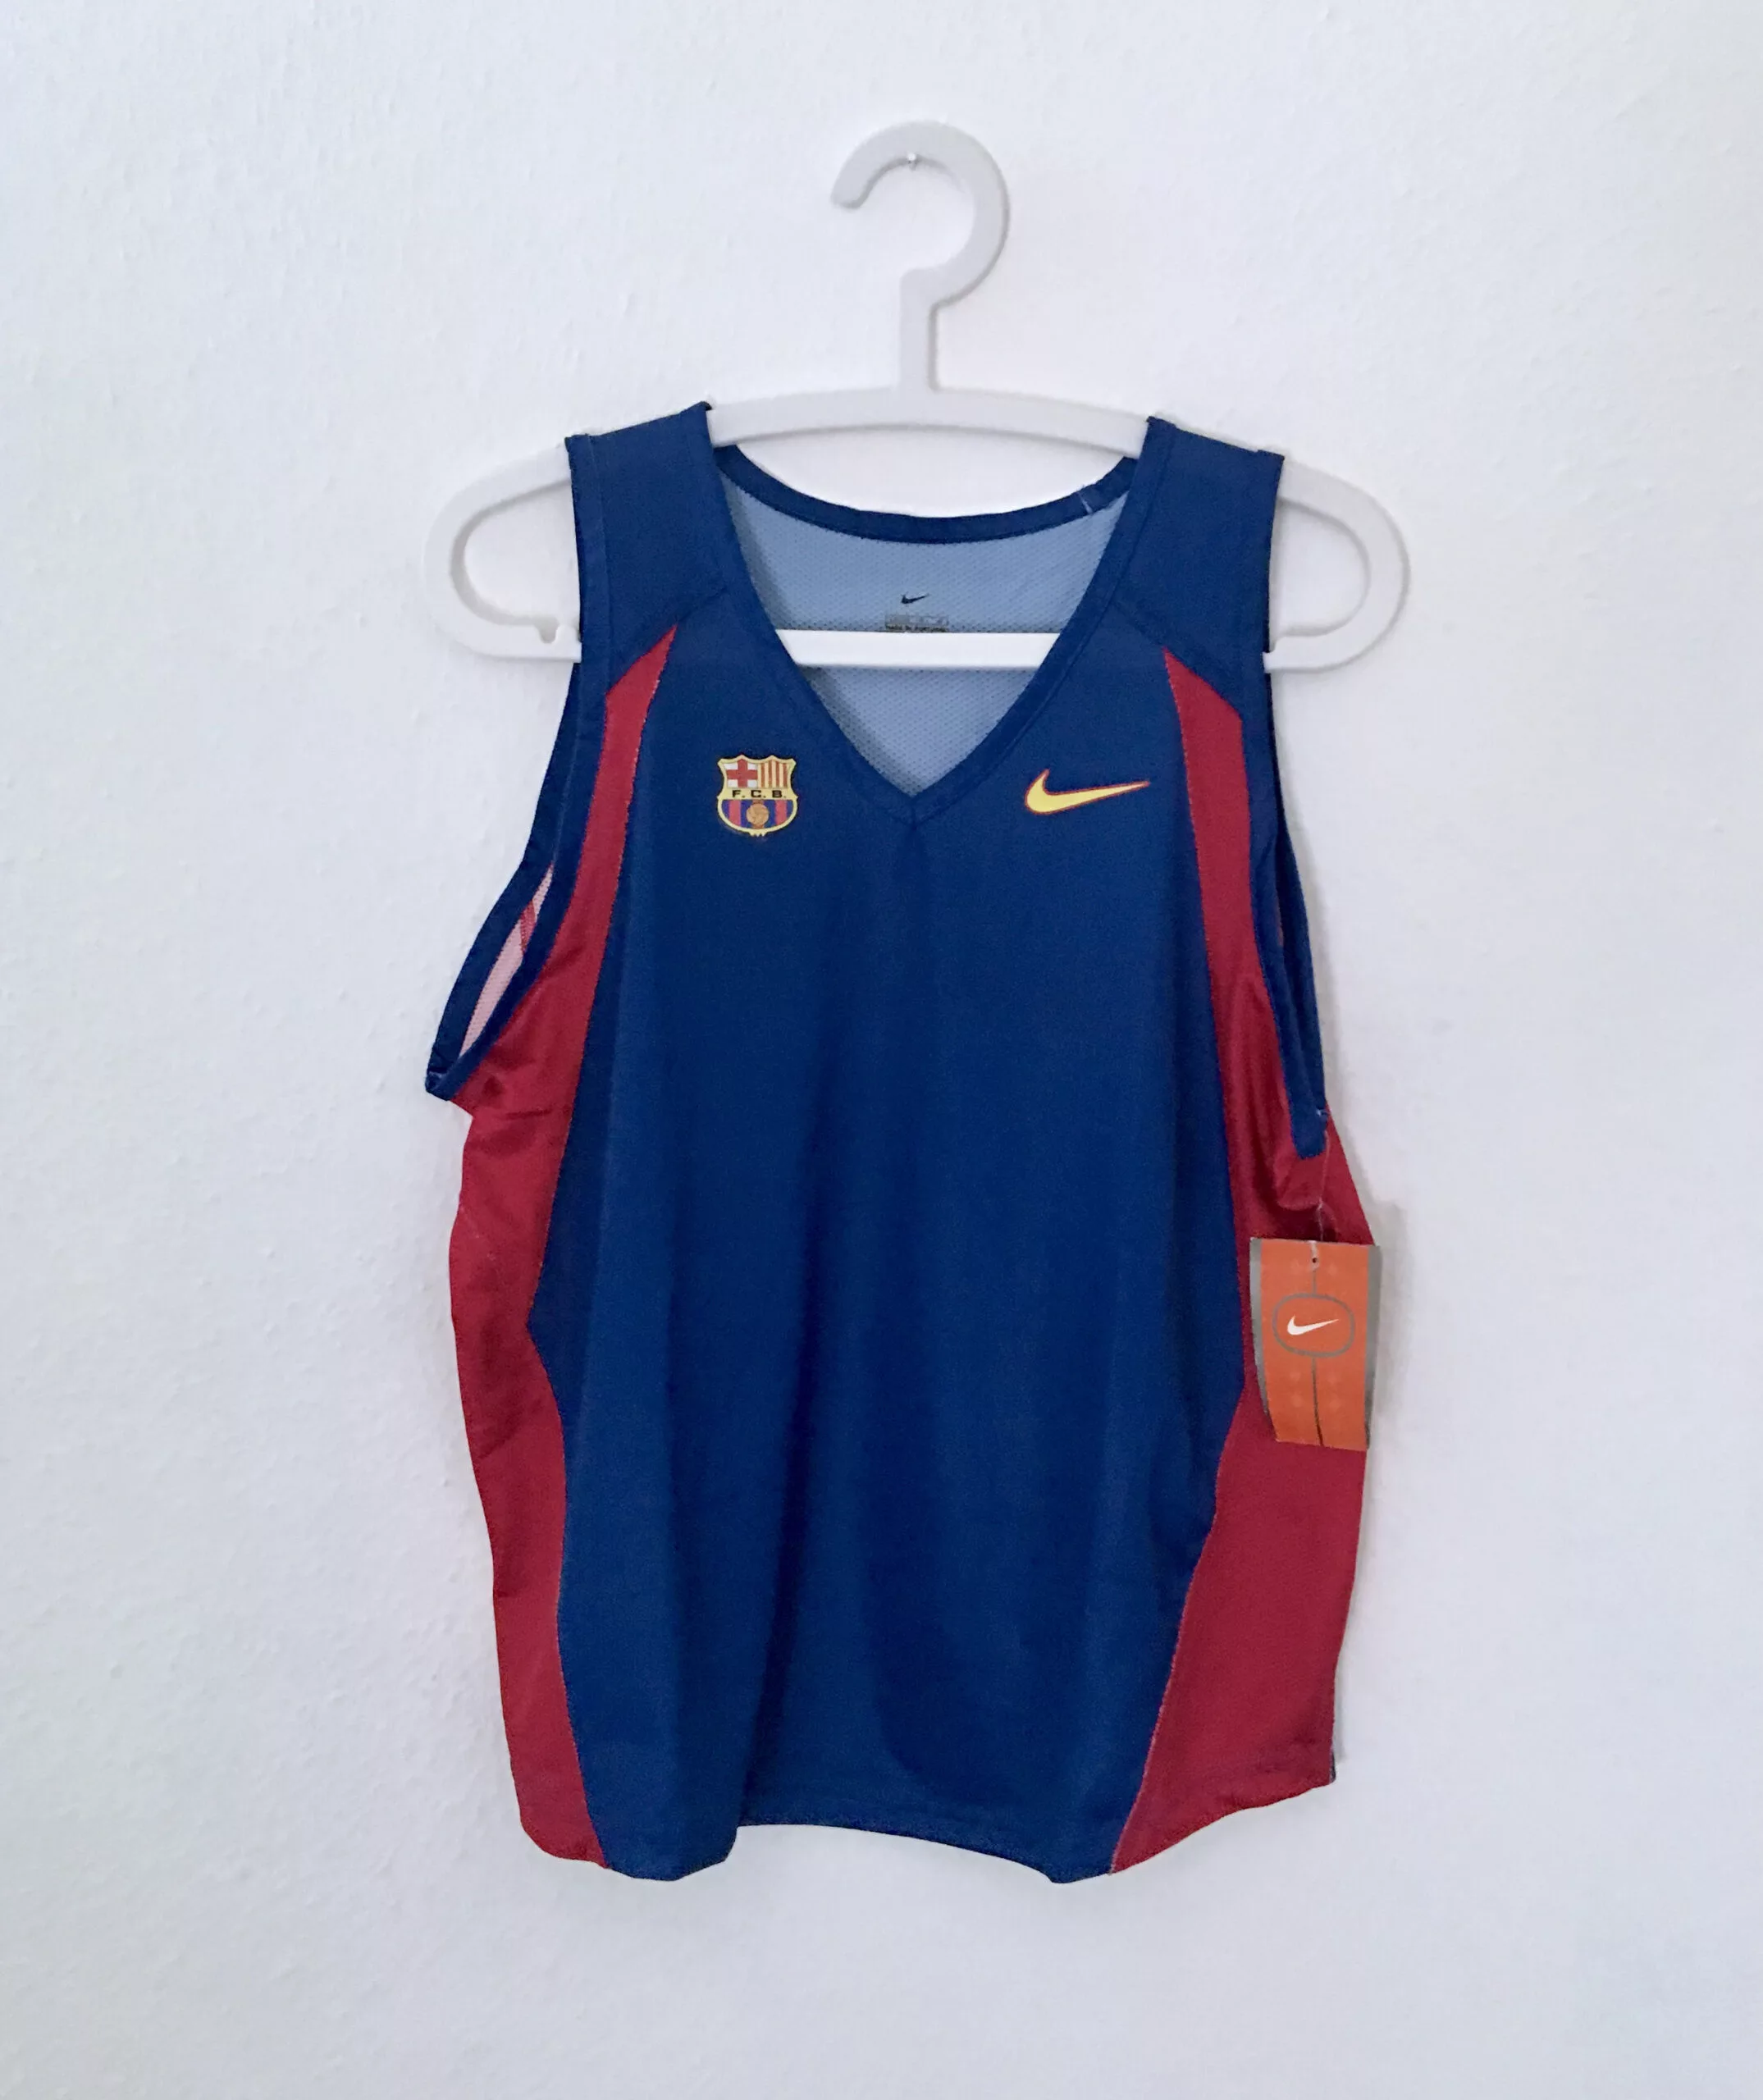 Rare Barcelona basketball shirt jersey size L nike